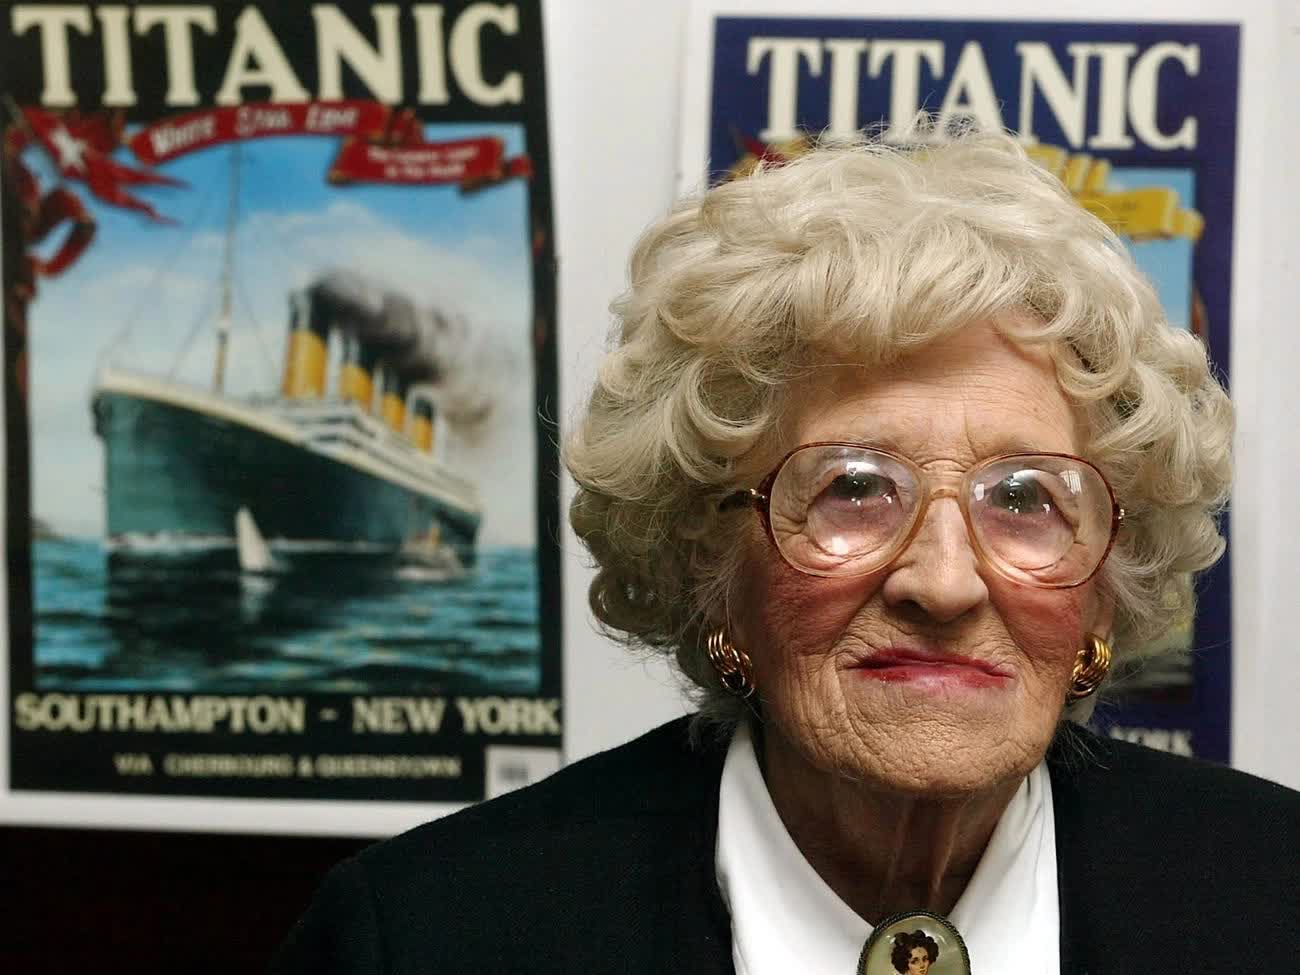 Câu chuyện của người sống sót cuối cùng sau thảm kịch Titanic: Lên tàu khi mới 9 tuần tuổi, từ chối xem phim vì lý do đau lòng - Ảnh 4.